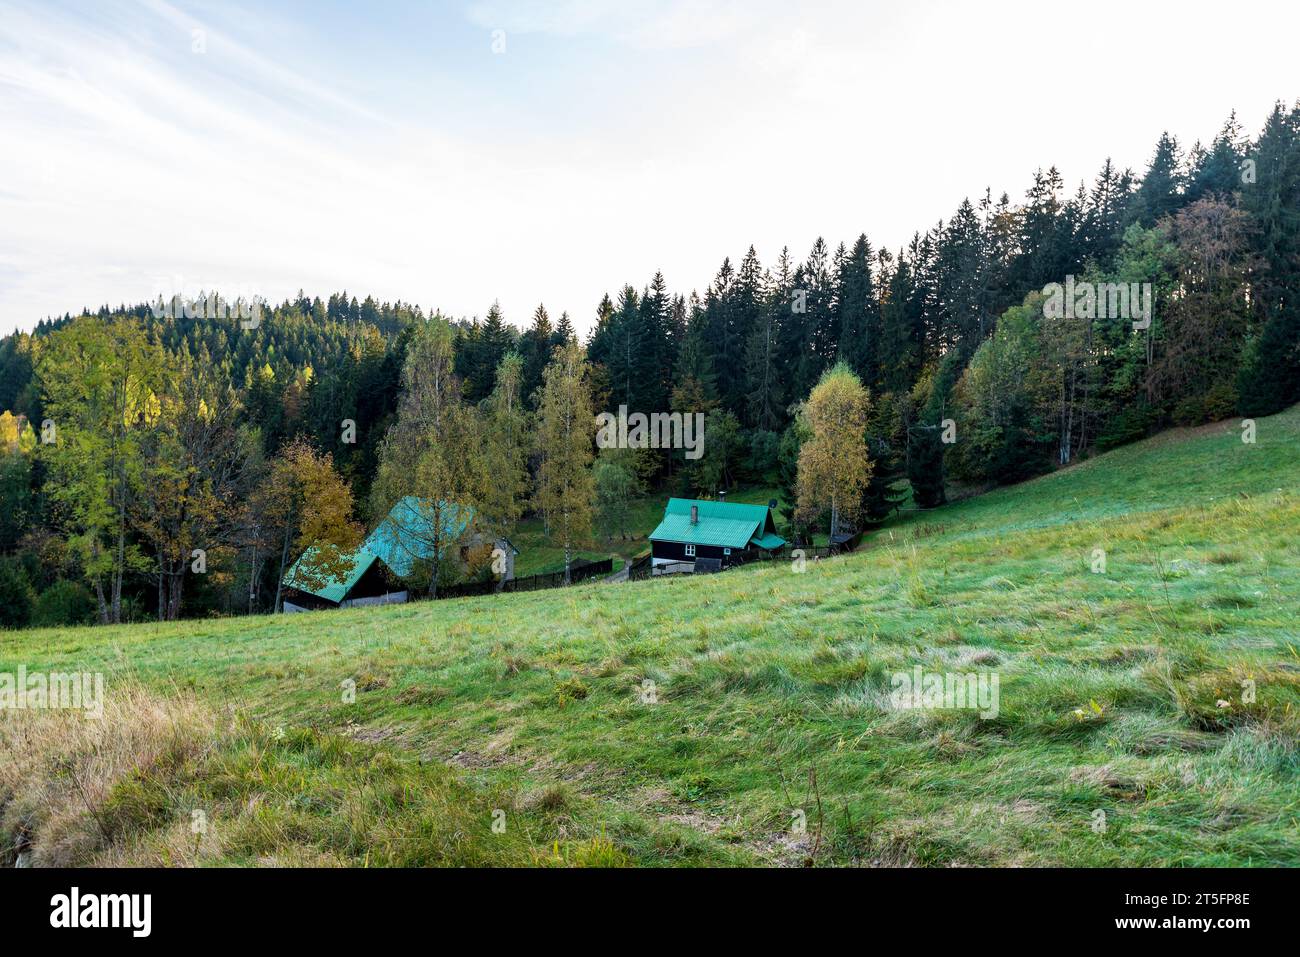 Herbst Moravskoslezske Beskidfy Berge belügen den Bobek Hügel an der tschechisch-slowakischen Grenze mit Wiese, wenigen Häusern und Hügel bedeckt von bunten Wald Stockfoto